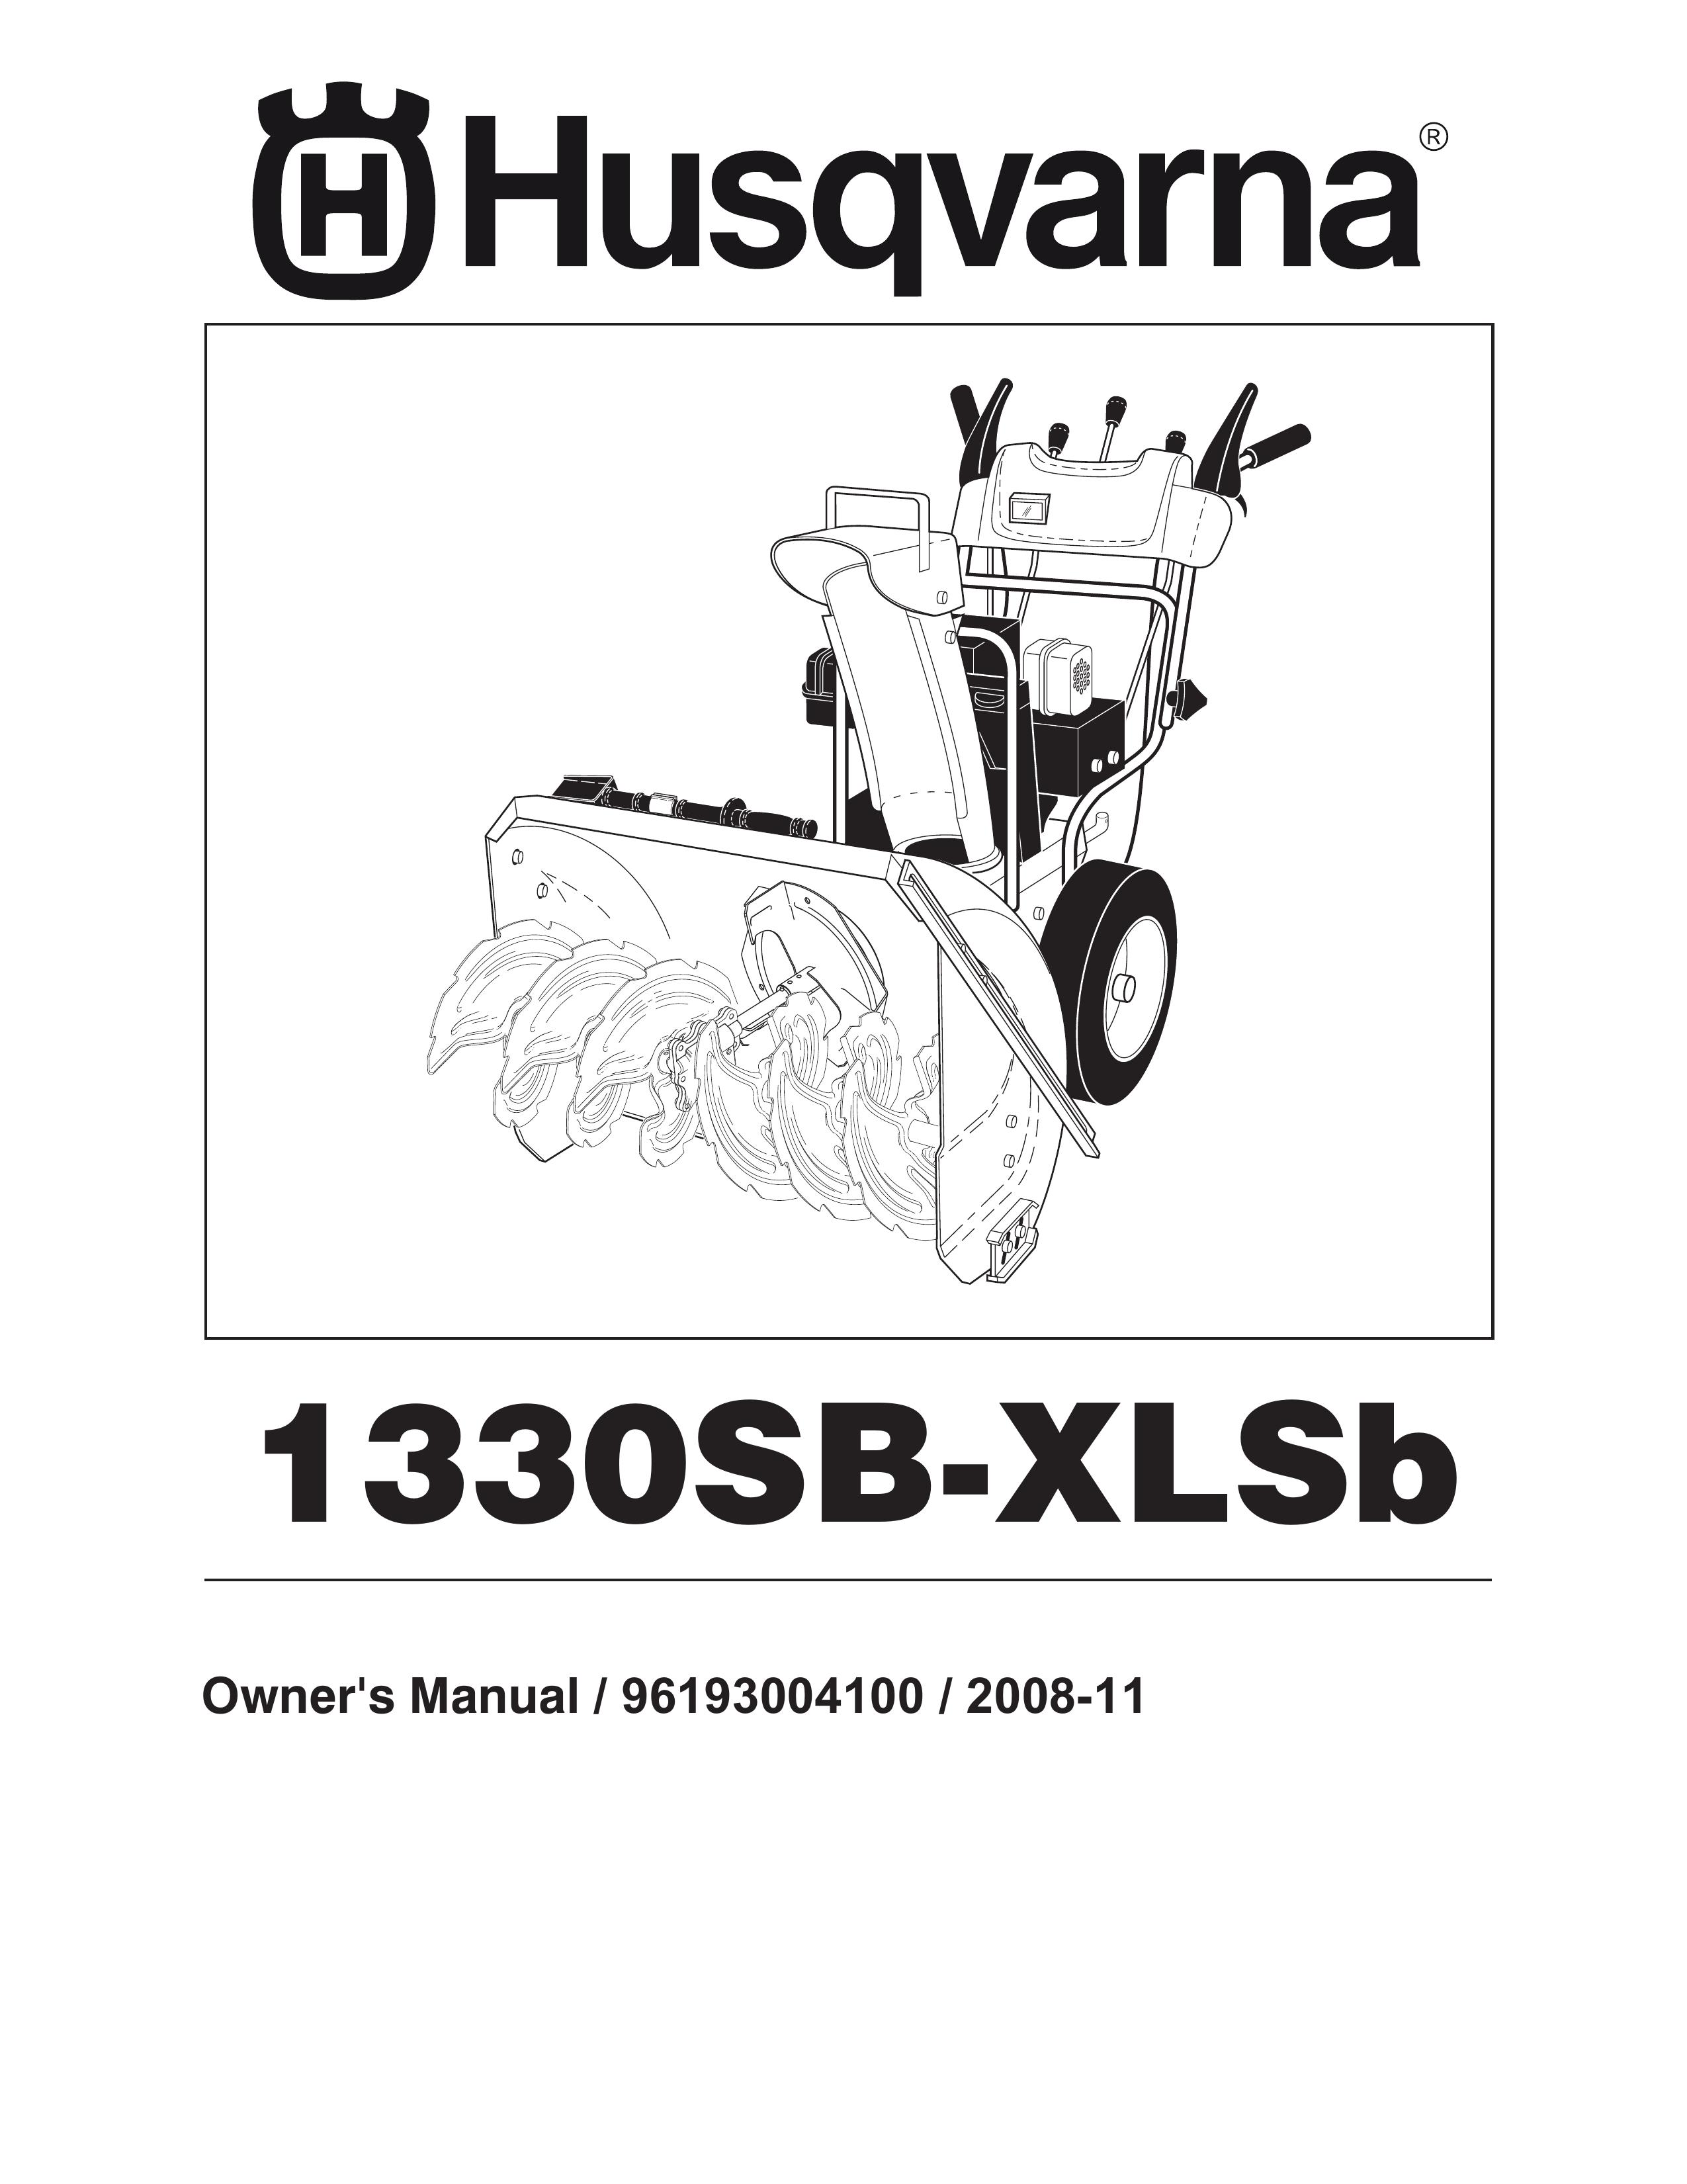 Husqvarna 1330SB-XLSB Snow Blower User Manual